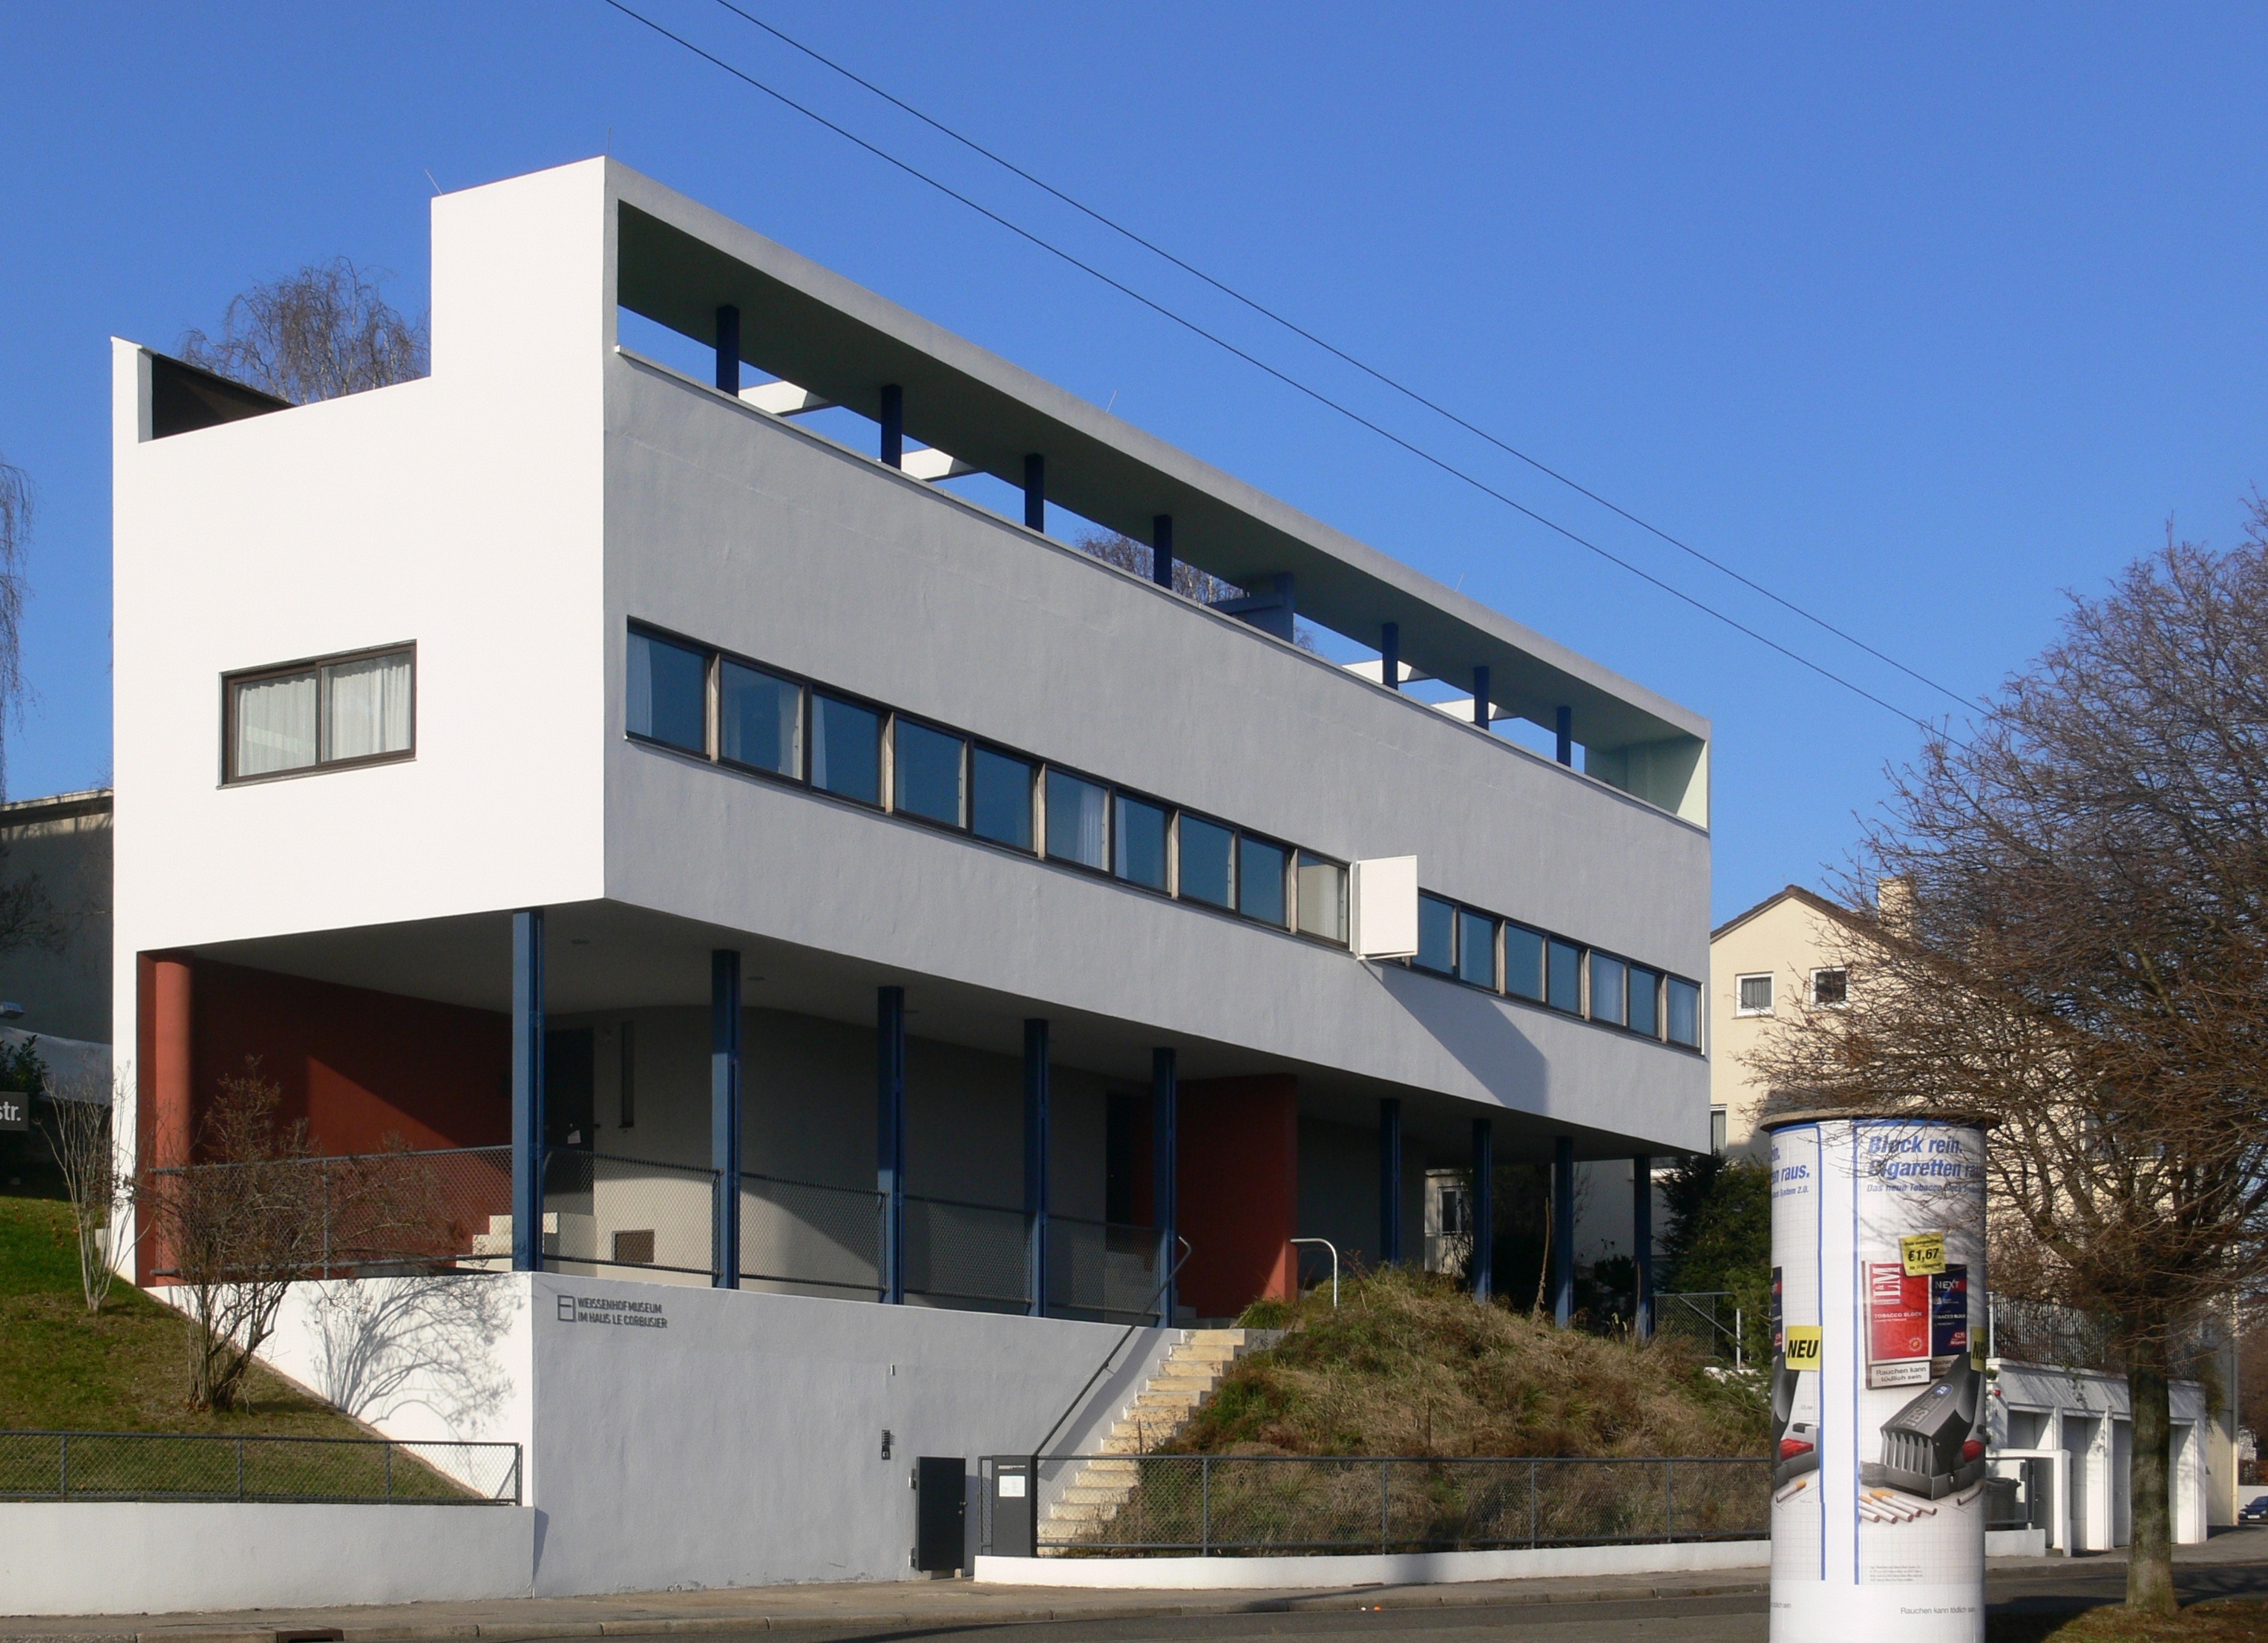 Eines der nun gelisteten Bauwerke: Das von Le Corbusier und Pierre Jeanneret entworfene Doppelhaus in der Stuttgarter Weißenhof-Siedlung.© Foto: Andreas Praefcke